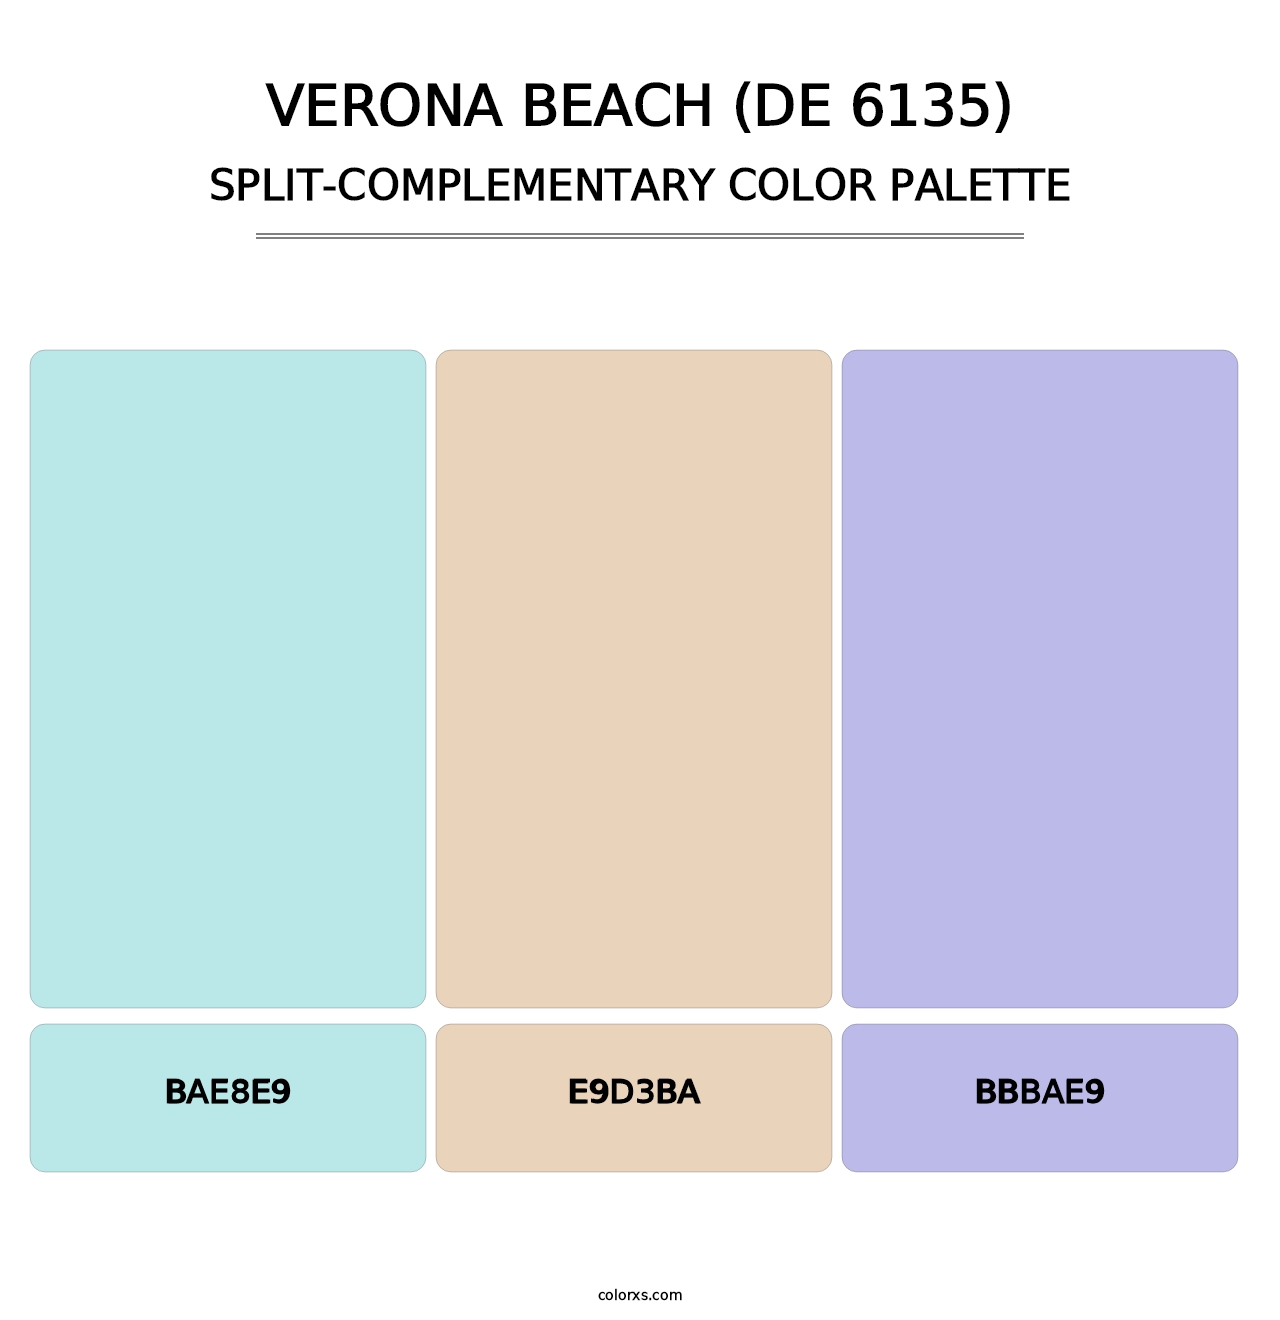 Verona Beach (DE 6135) - Split-Complementary Color Palette